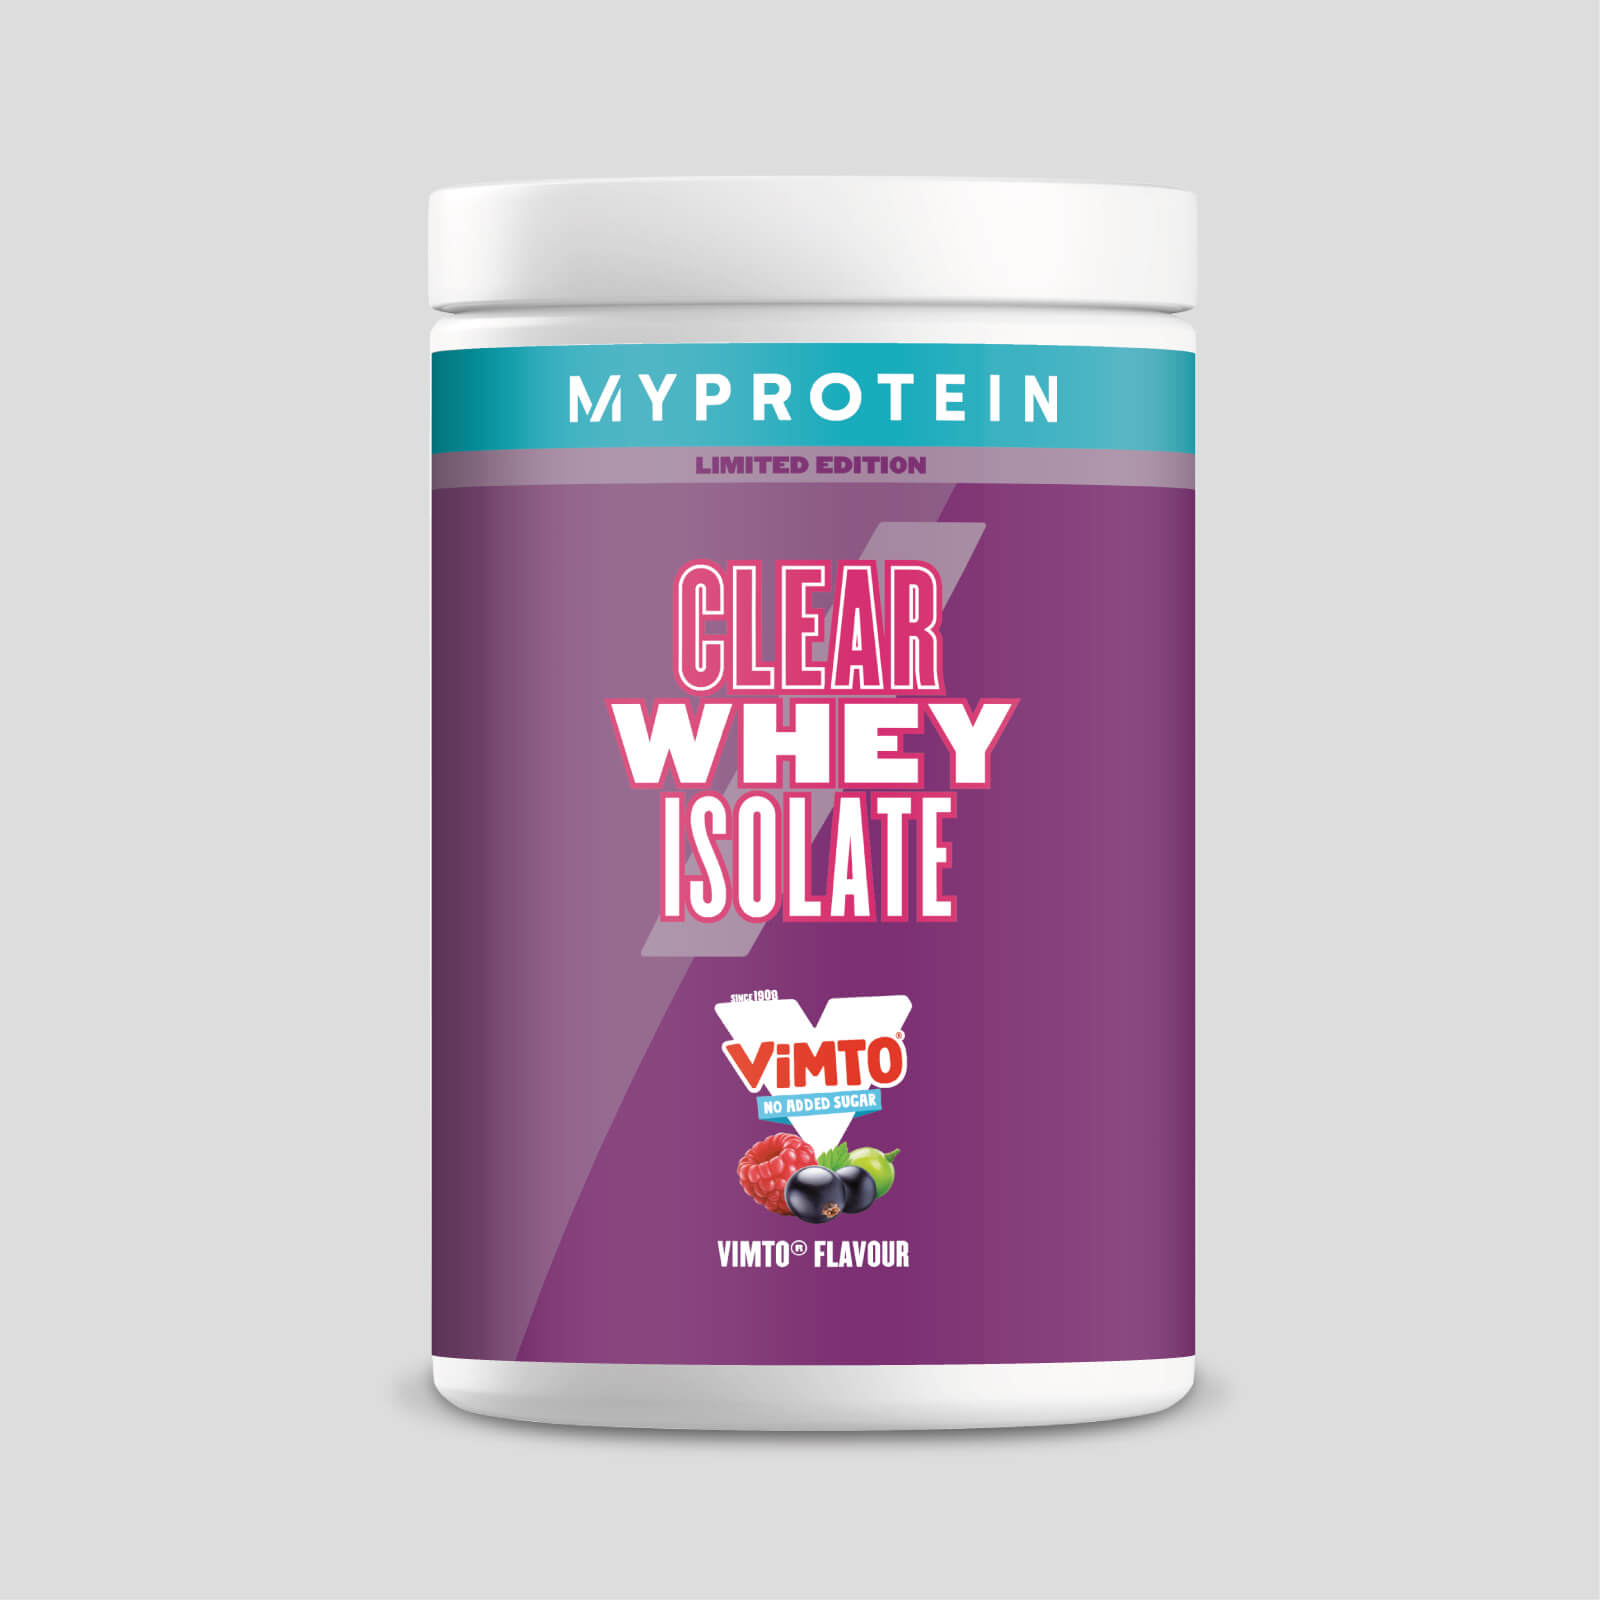 Myprotein Vimto Original Clear Whey